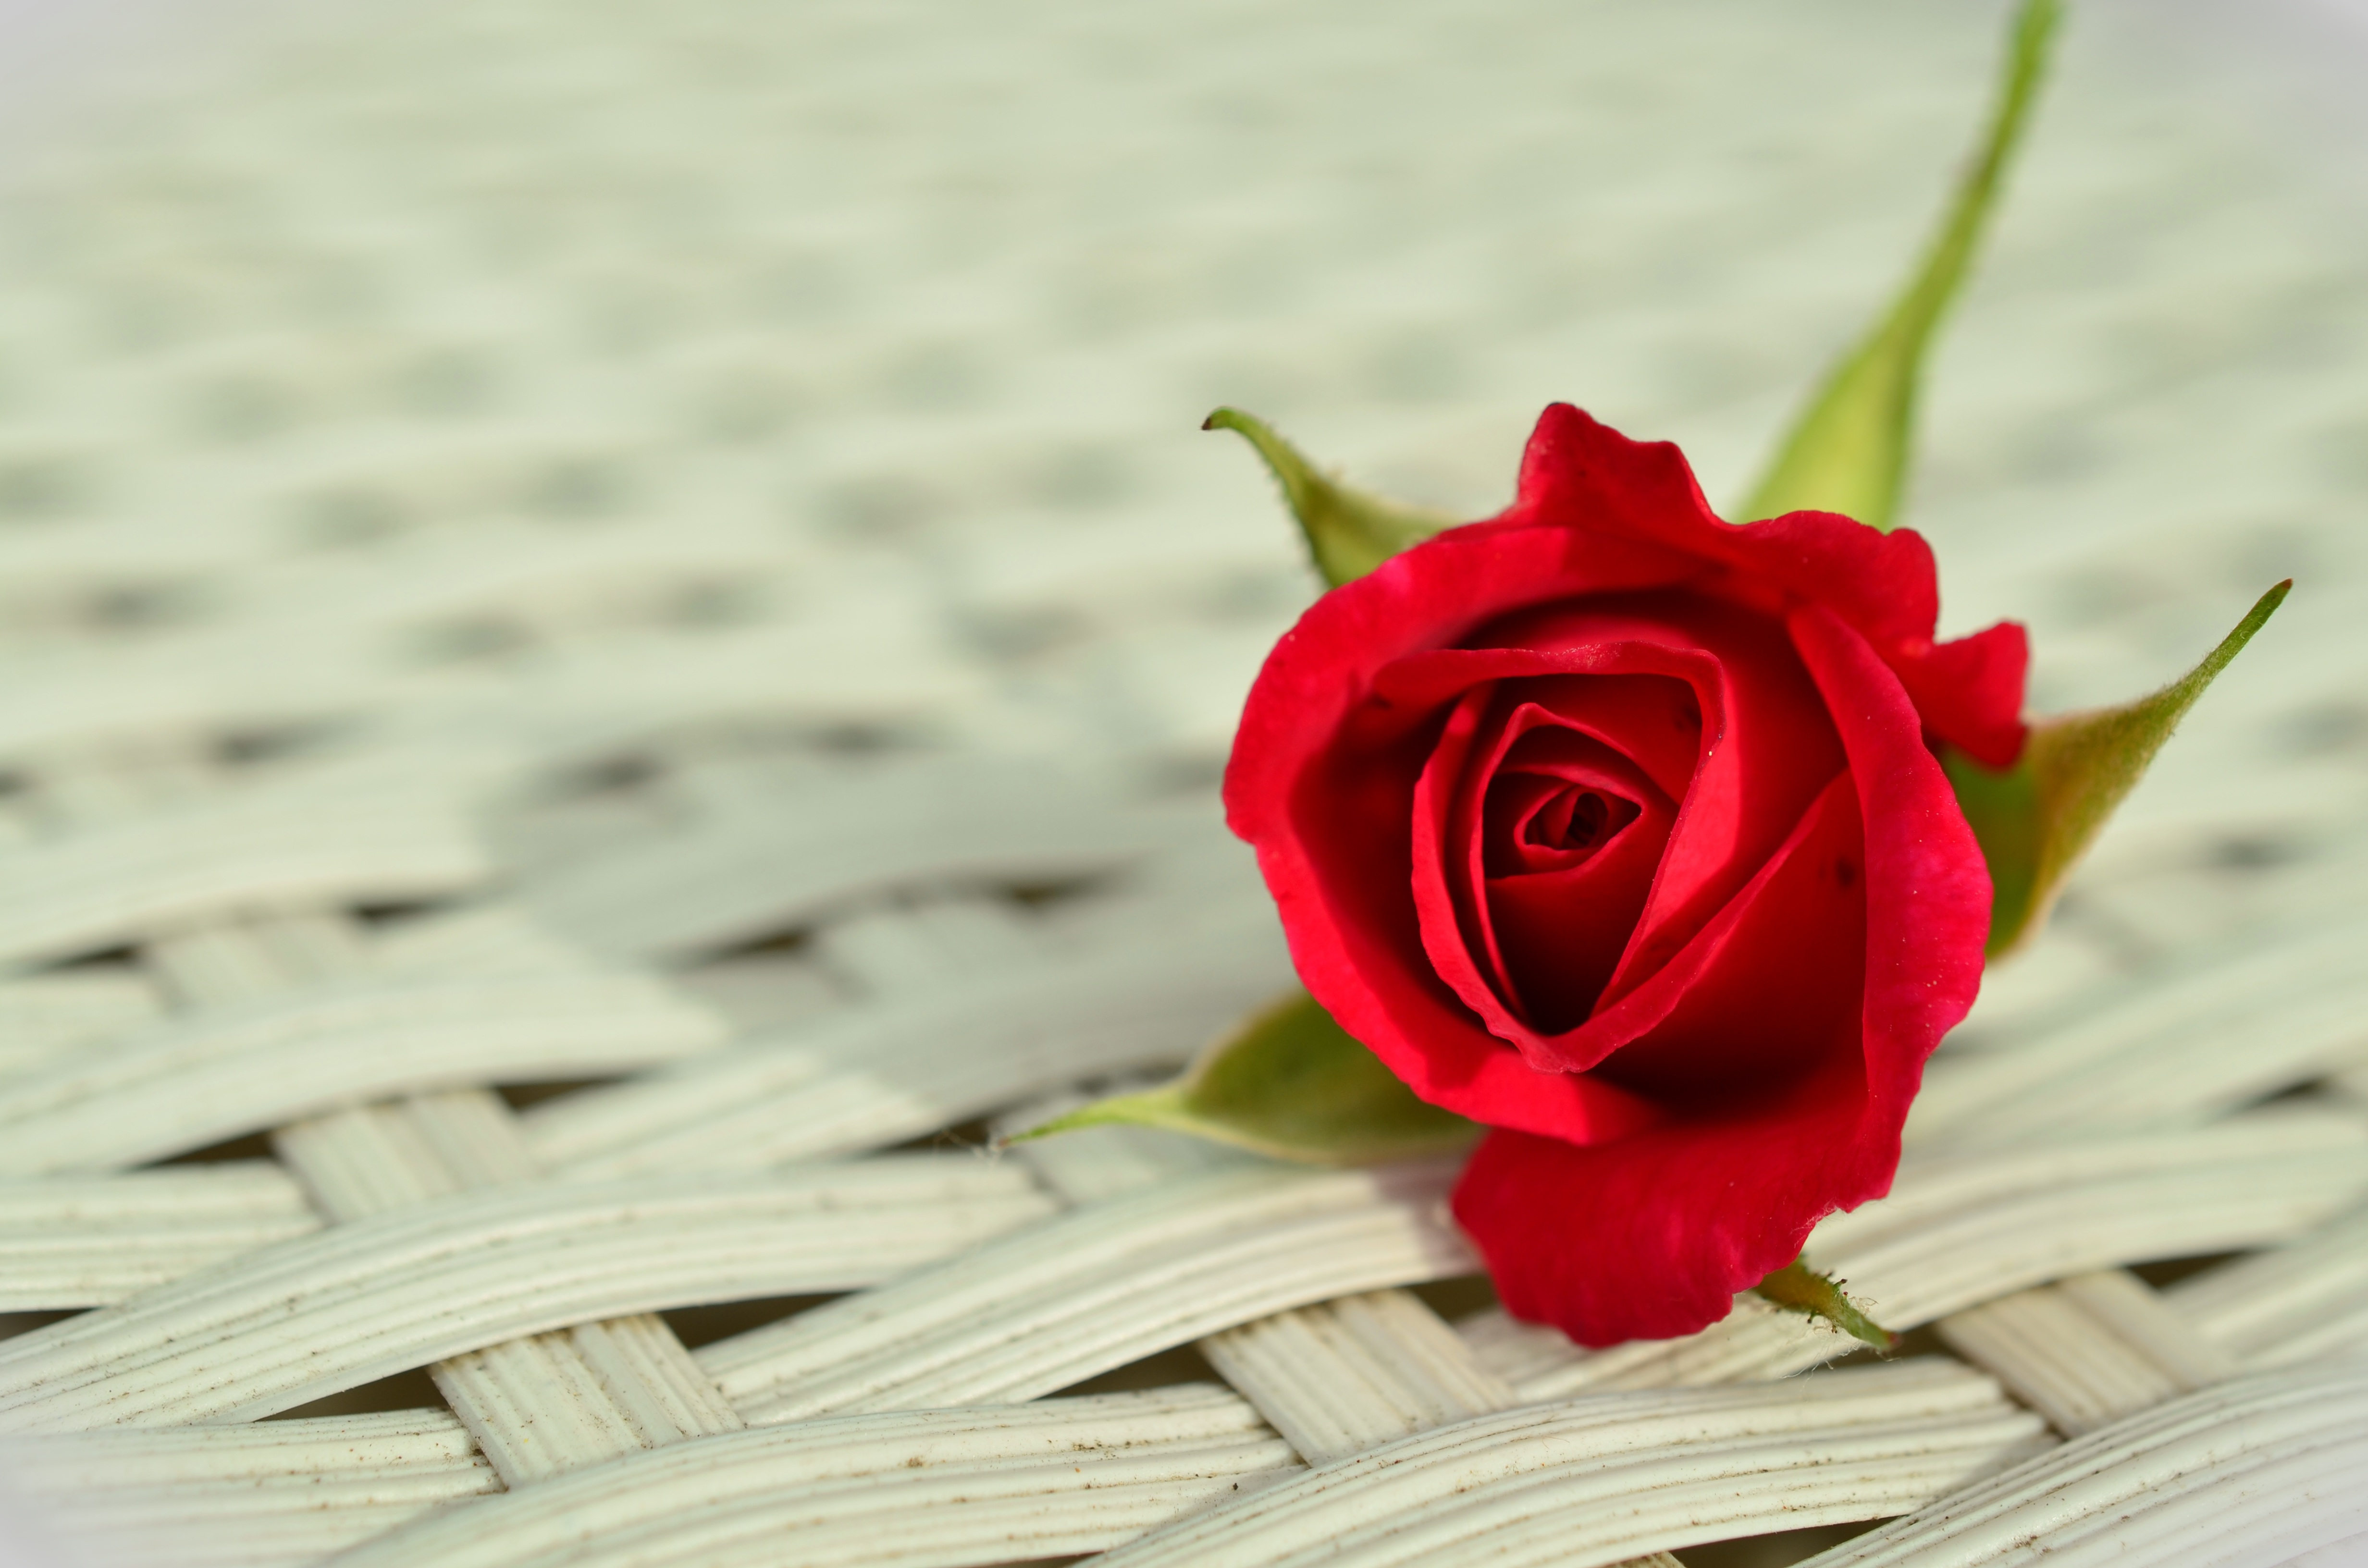 rose-red-rose-romantic-rose-bloom.jpg